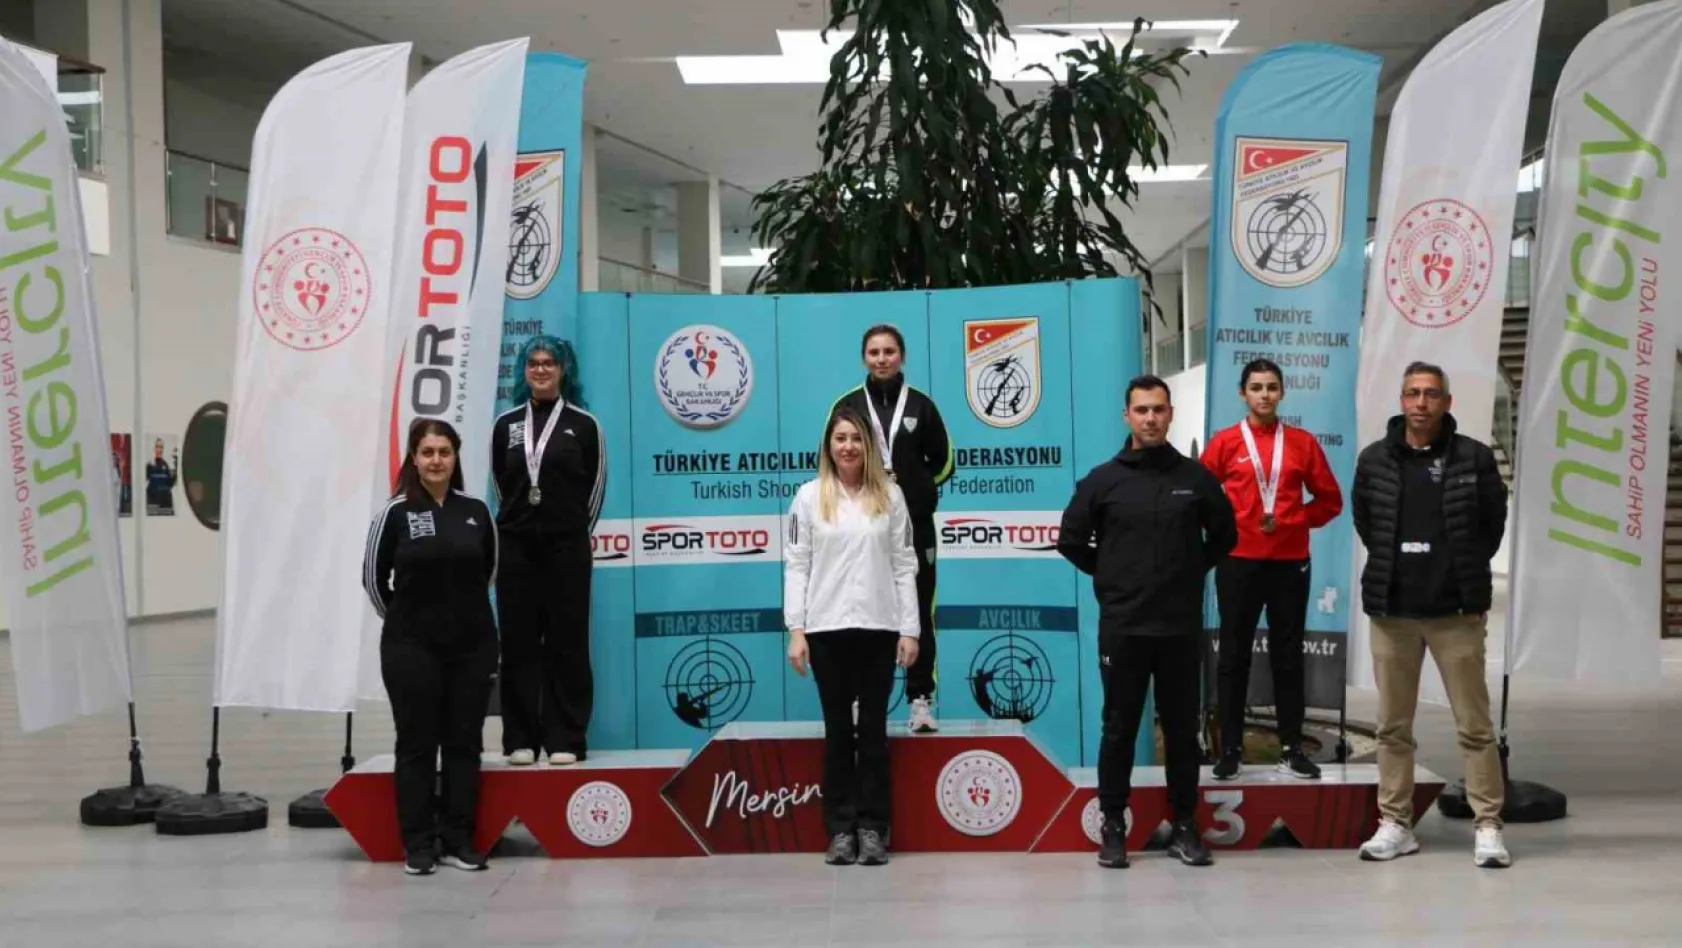 Manisalı atıcılar Türkiye Şampiyonu